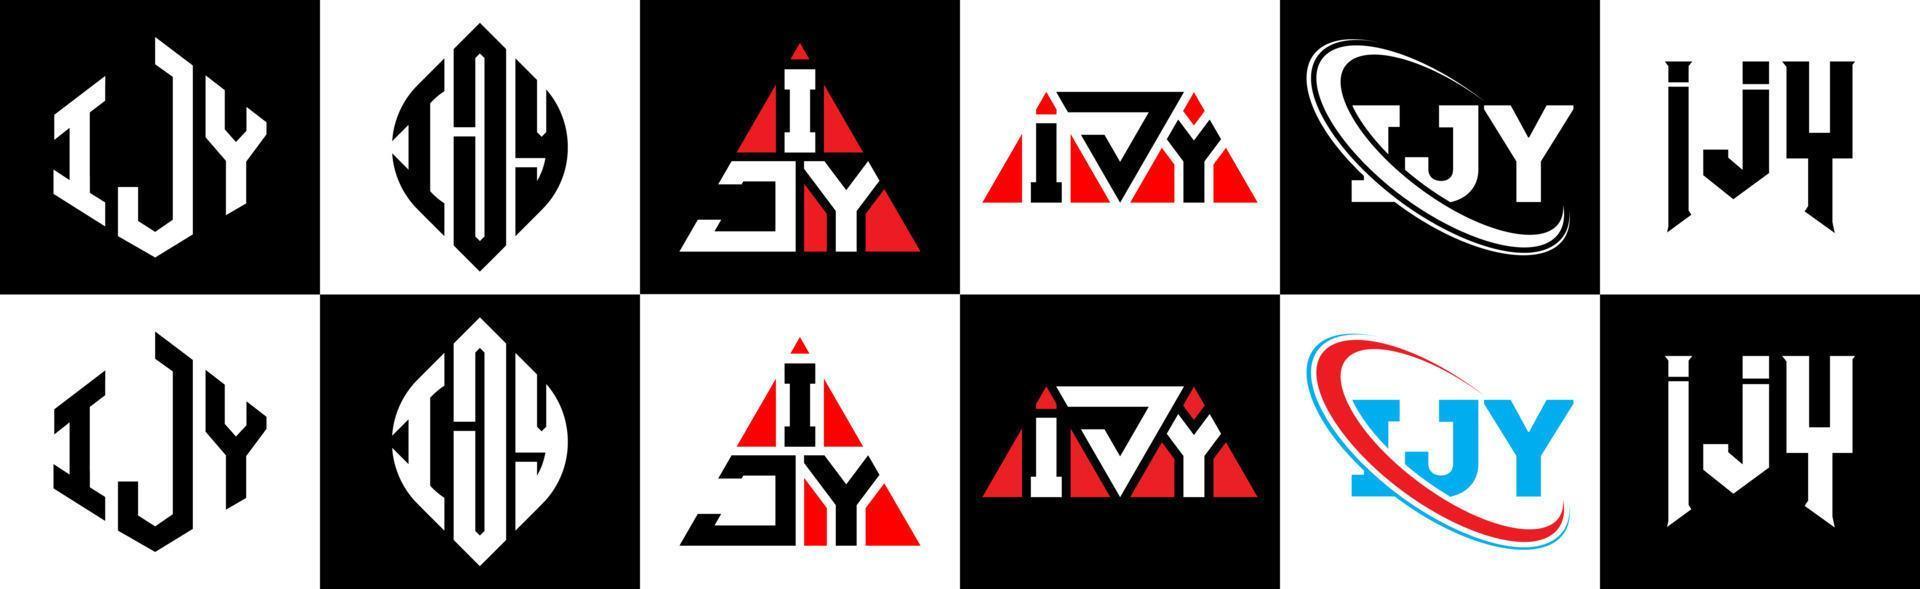 ijy-Buchstaben-Logo-Design in sechs Stilen. ijy-Polygon, Kreis, Dreieck, Sechseck, flacher und einfacher Stil mit schwarz-weißem Buchstabenlogo in einer Zeichenfläche. ijy minimalistisches und klassisches Logo vektor